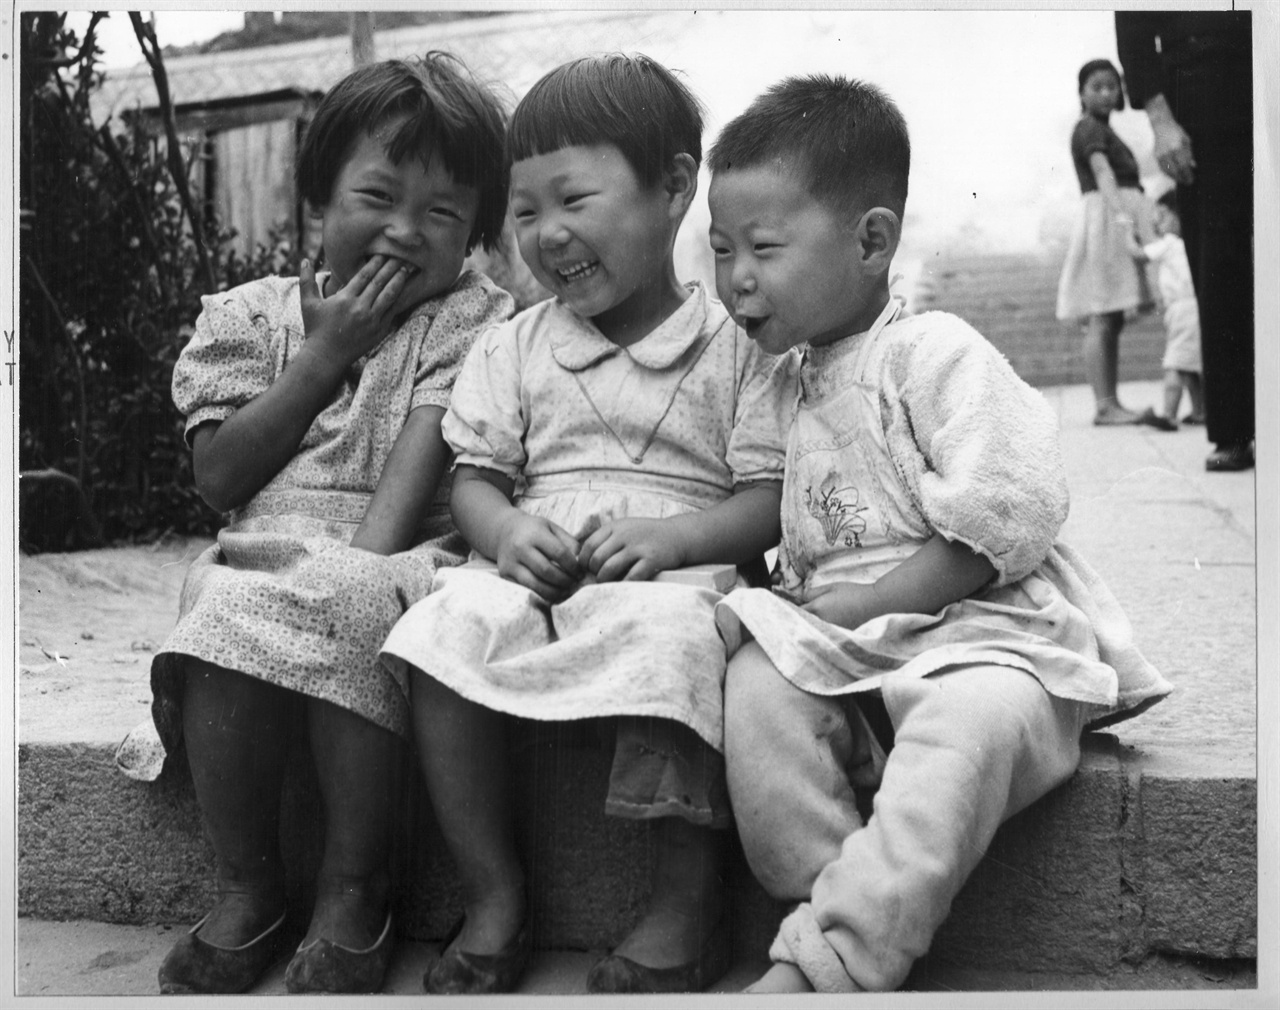  1951. 10. 26. 부산. 전쟁 중이지만 어린이의 티 없는 웃음.